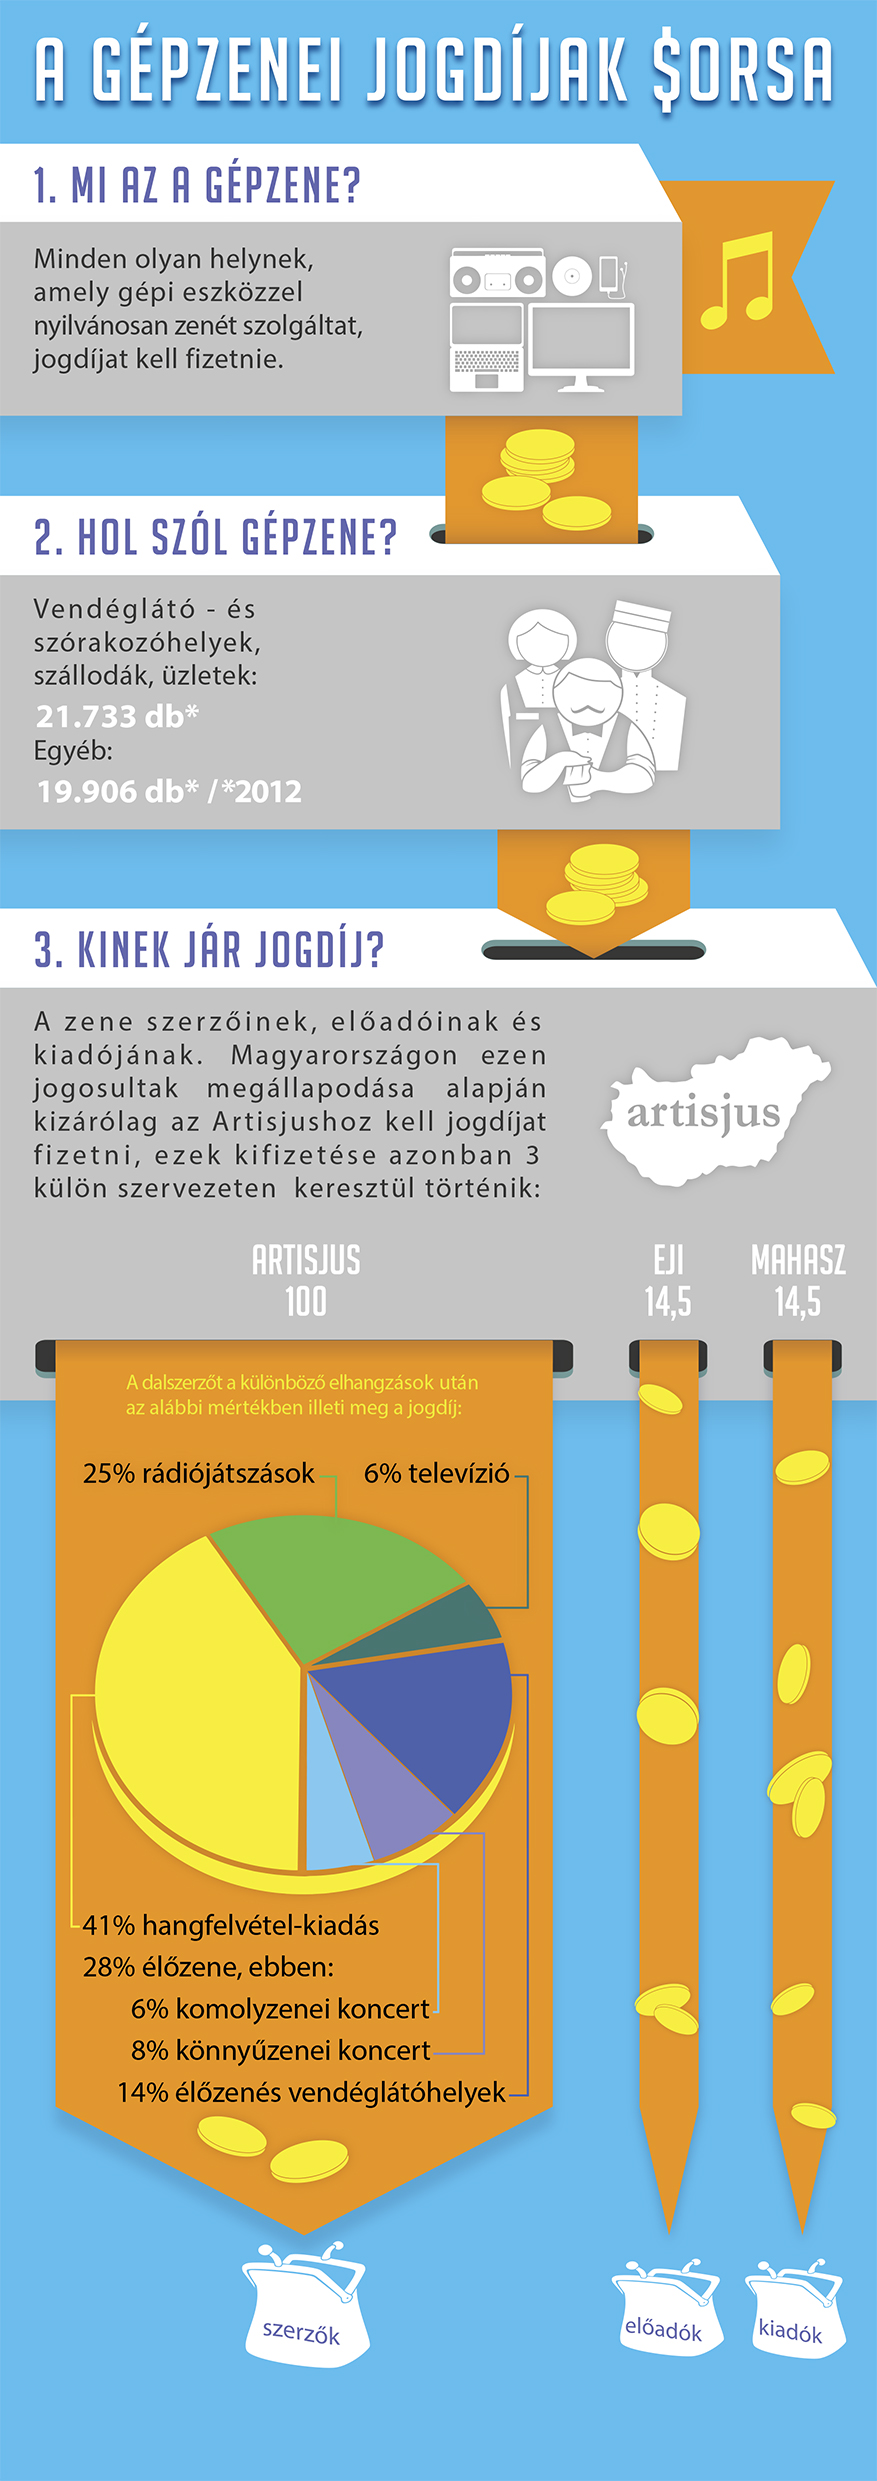 Artisjus - A gépzenei jogdíjak sorsa - infografika - a4csík.jpg